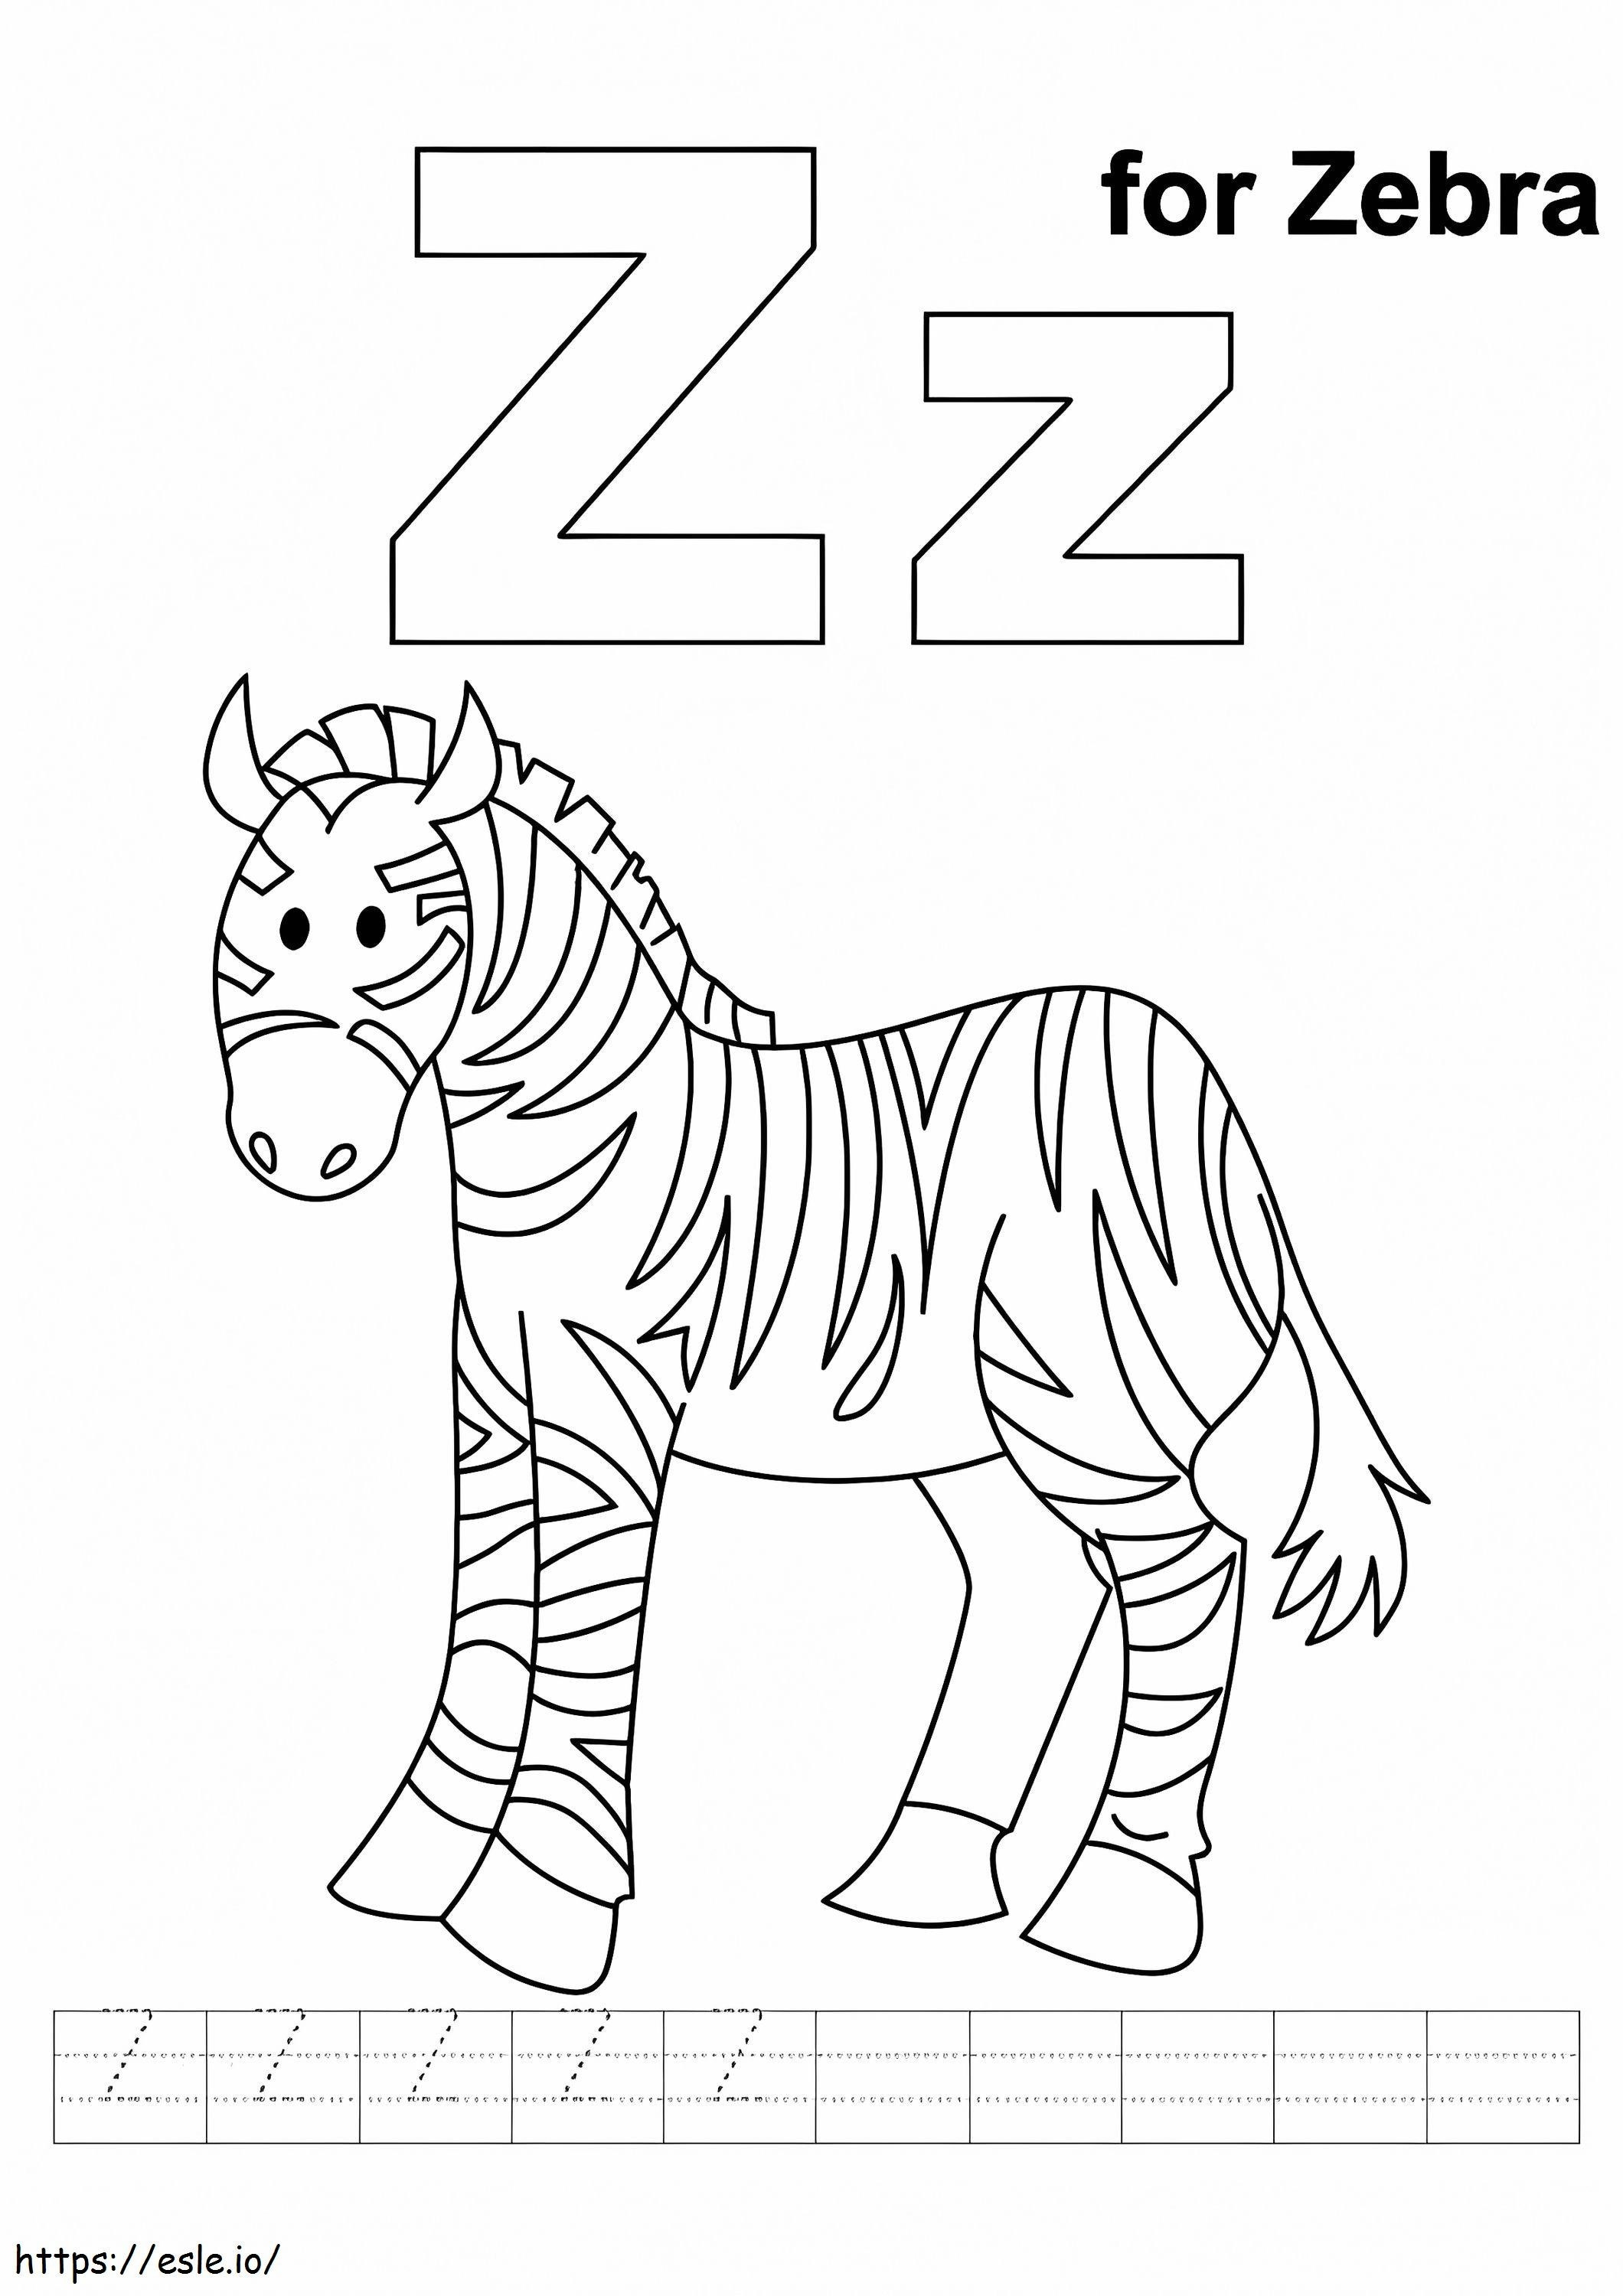 O Bebê Fofo Zebra1 A4 para colorir